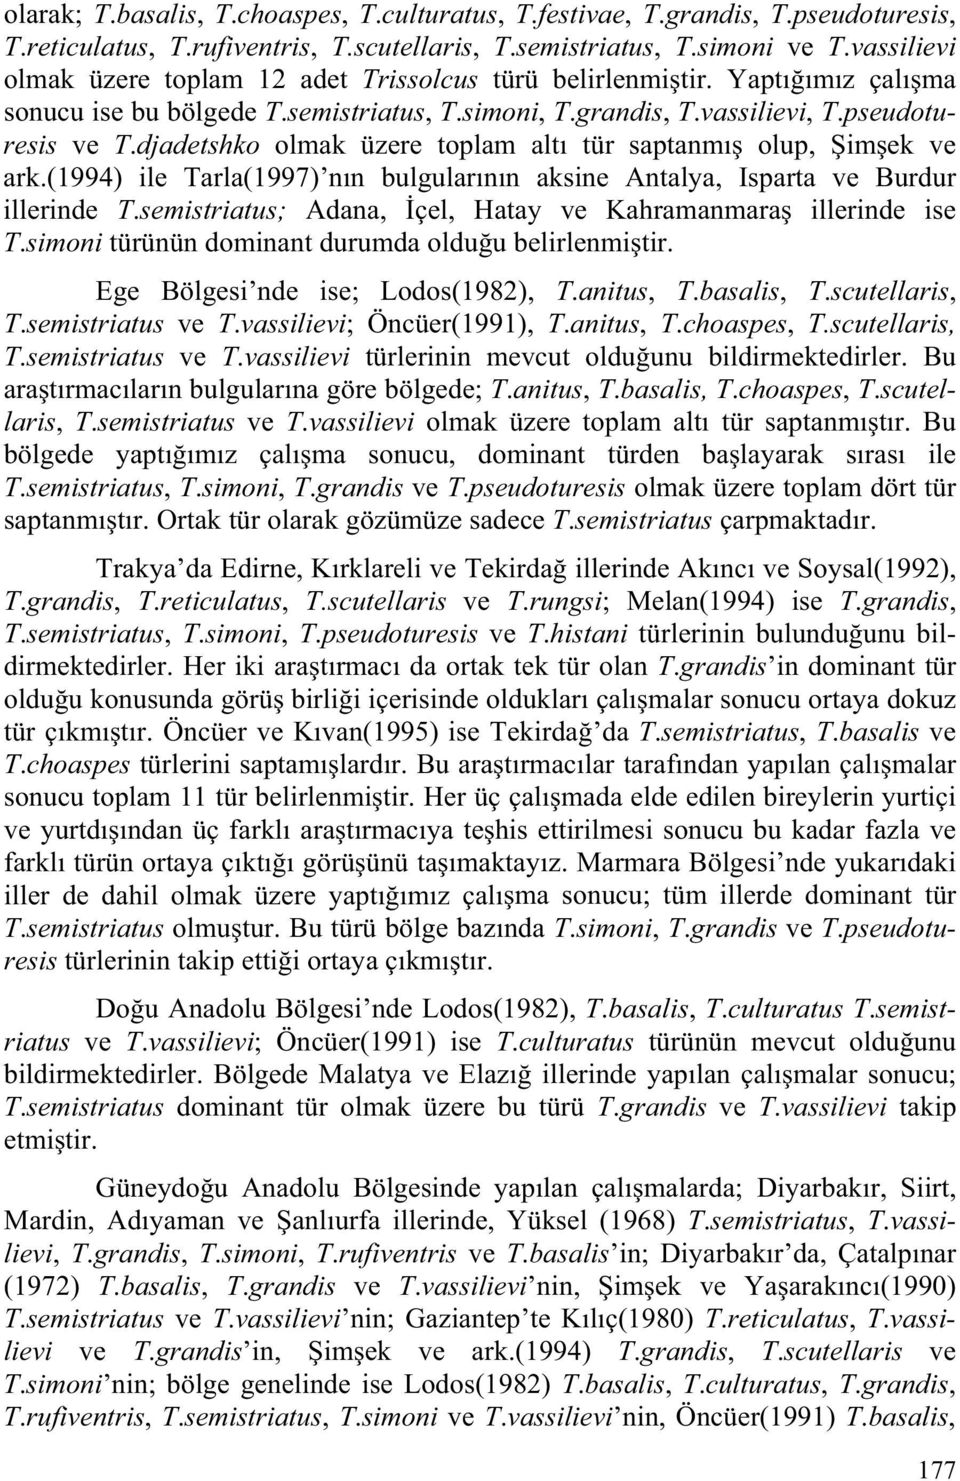 djadetshko olmak üzere toplam altı tür saptanmı olup, im ek ve ark.(1994) ile Tarla(1997) nın bulgularının aksine Antalya, Isparta ve Burdur illerinde T.